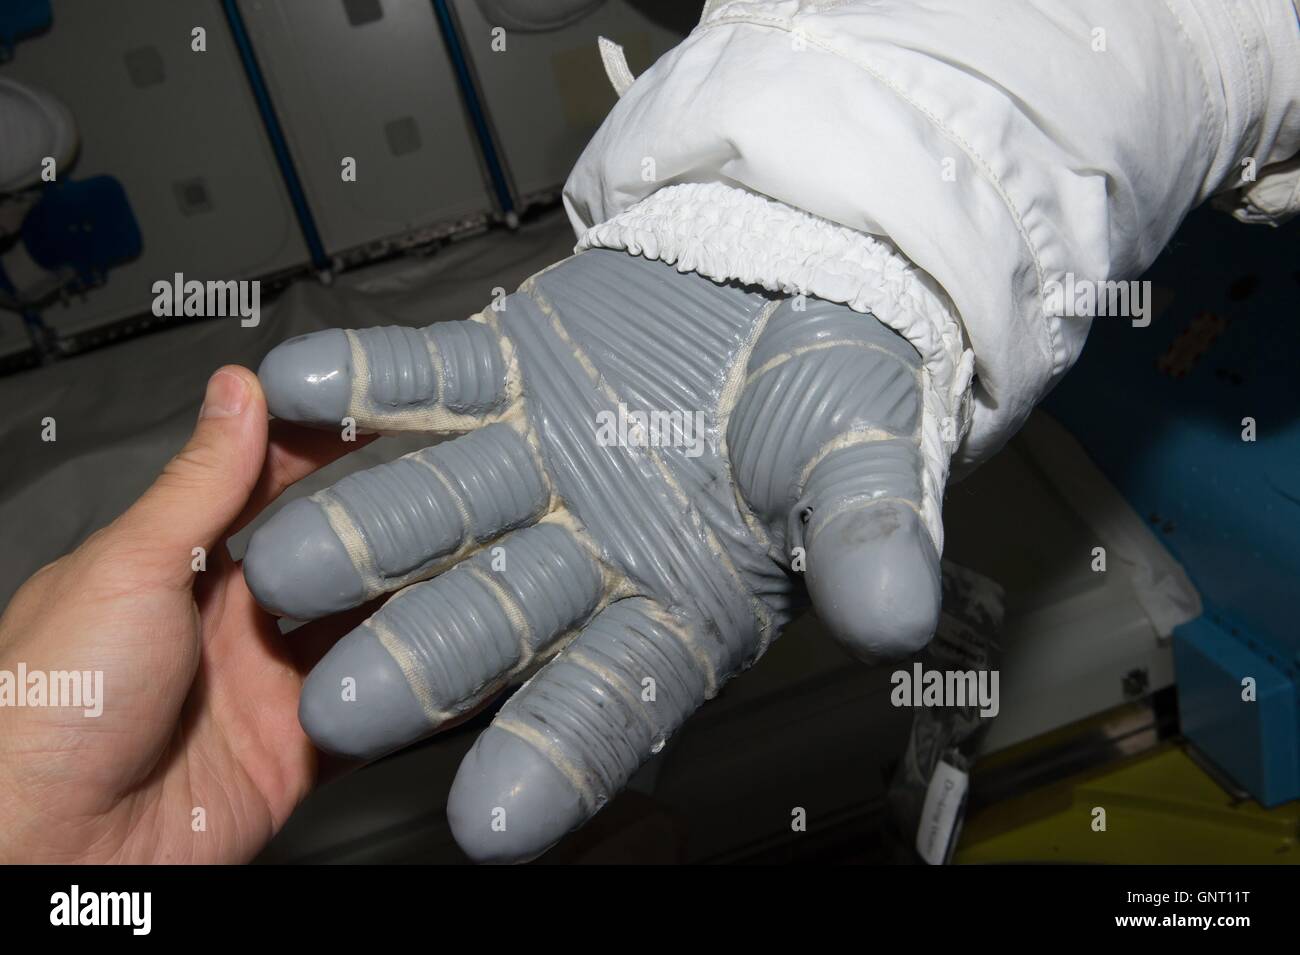 Stazione Spaziale Internazionale Expedition 48 astronauta Jeff Williams ispeziona la sua tuta guanti prima di prendere parte a una spacewalk con il compagno astronauta Kate Rubins per installare un nuovo internazionale adattatore docking Agosto 19, 2016 in orbita intorno alla terra. Foto Stock